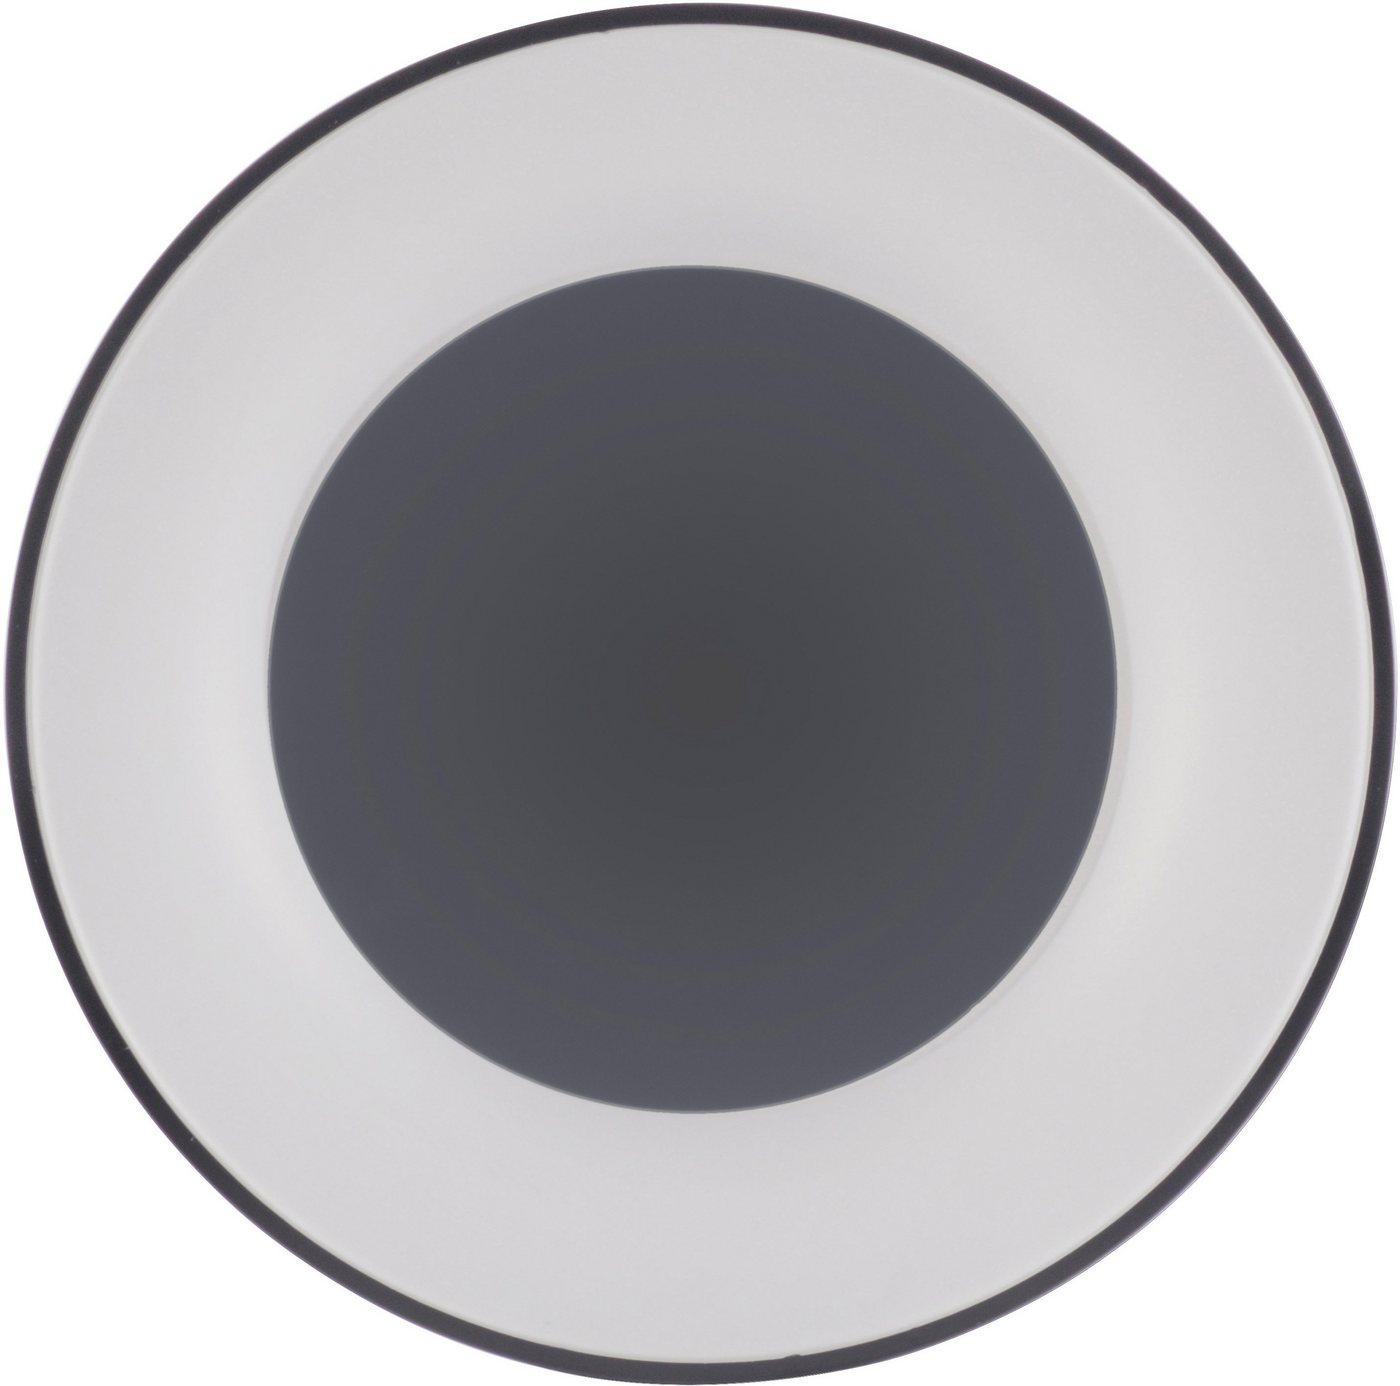 my home LED Deckenleuchte »Aidan«, Deckenleuchte schwarz mit Farbtemperatursteuerung CCT 2700-5000K, Deckenlampe inkl. Infrarotfernbedienung, dimmbar, Memoryfunktion, Serienschalter-HomeTrends